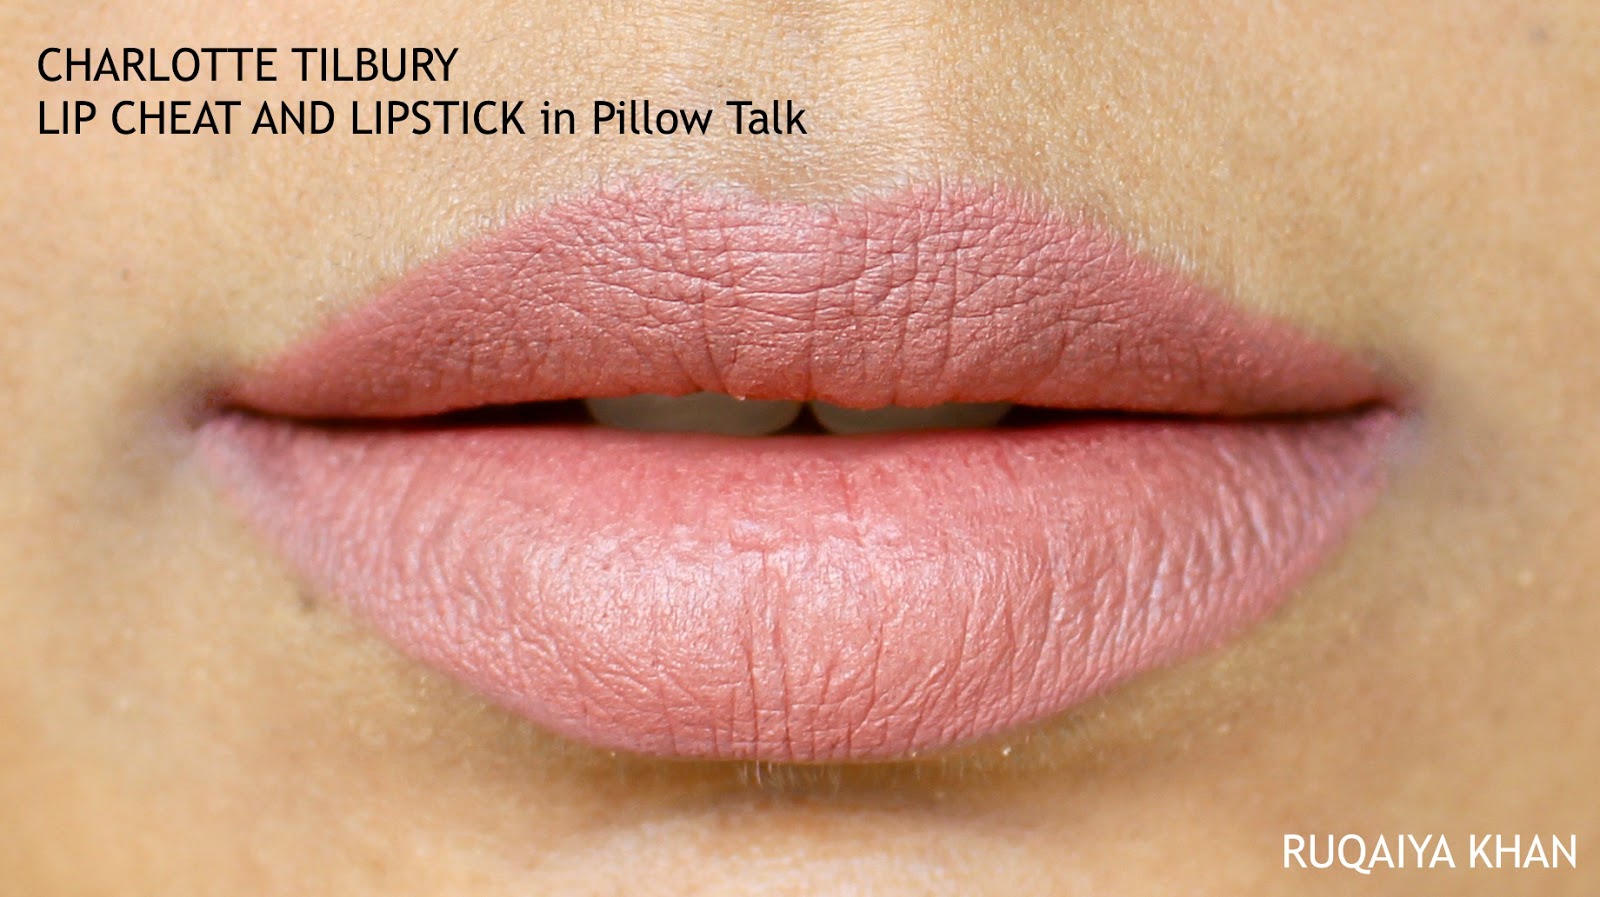 Ruqaiya Khan: CHARLOTTE TILBURY - The Gift of Pillow Talk Lips